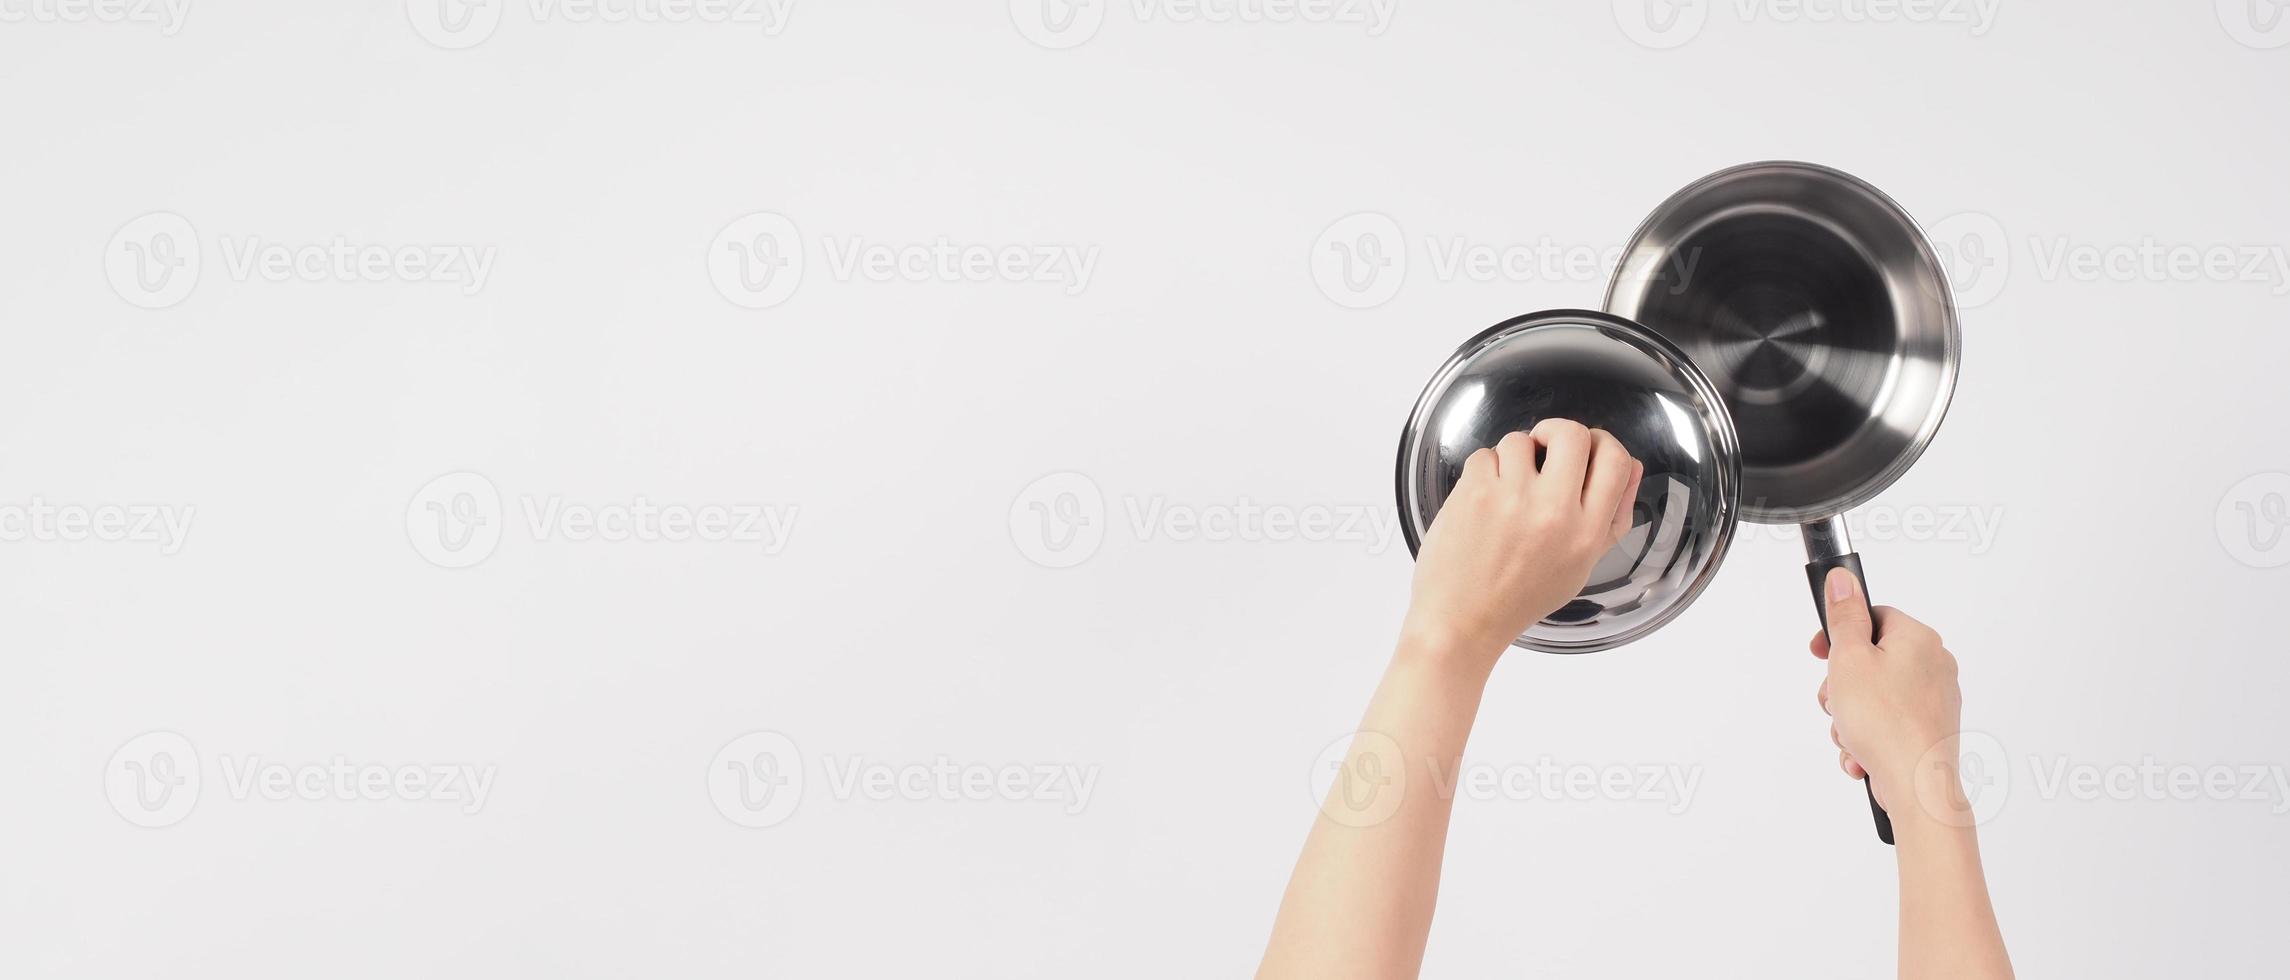 main d'homme de nettoyage de pot sur fond blanc nettoyant le pot antiadhésif avec une éponge à vaisselle pratique de couleur jaune sur le côté doux et verte sur le côté dur pour l'hygiène après la cuisson. marmite électrique photo